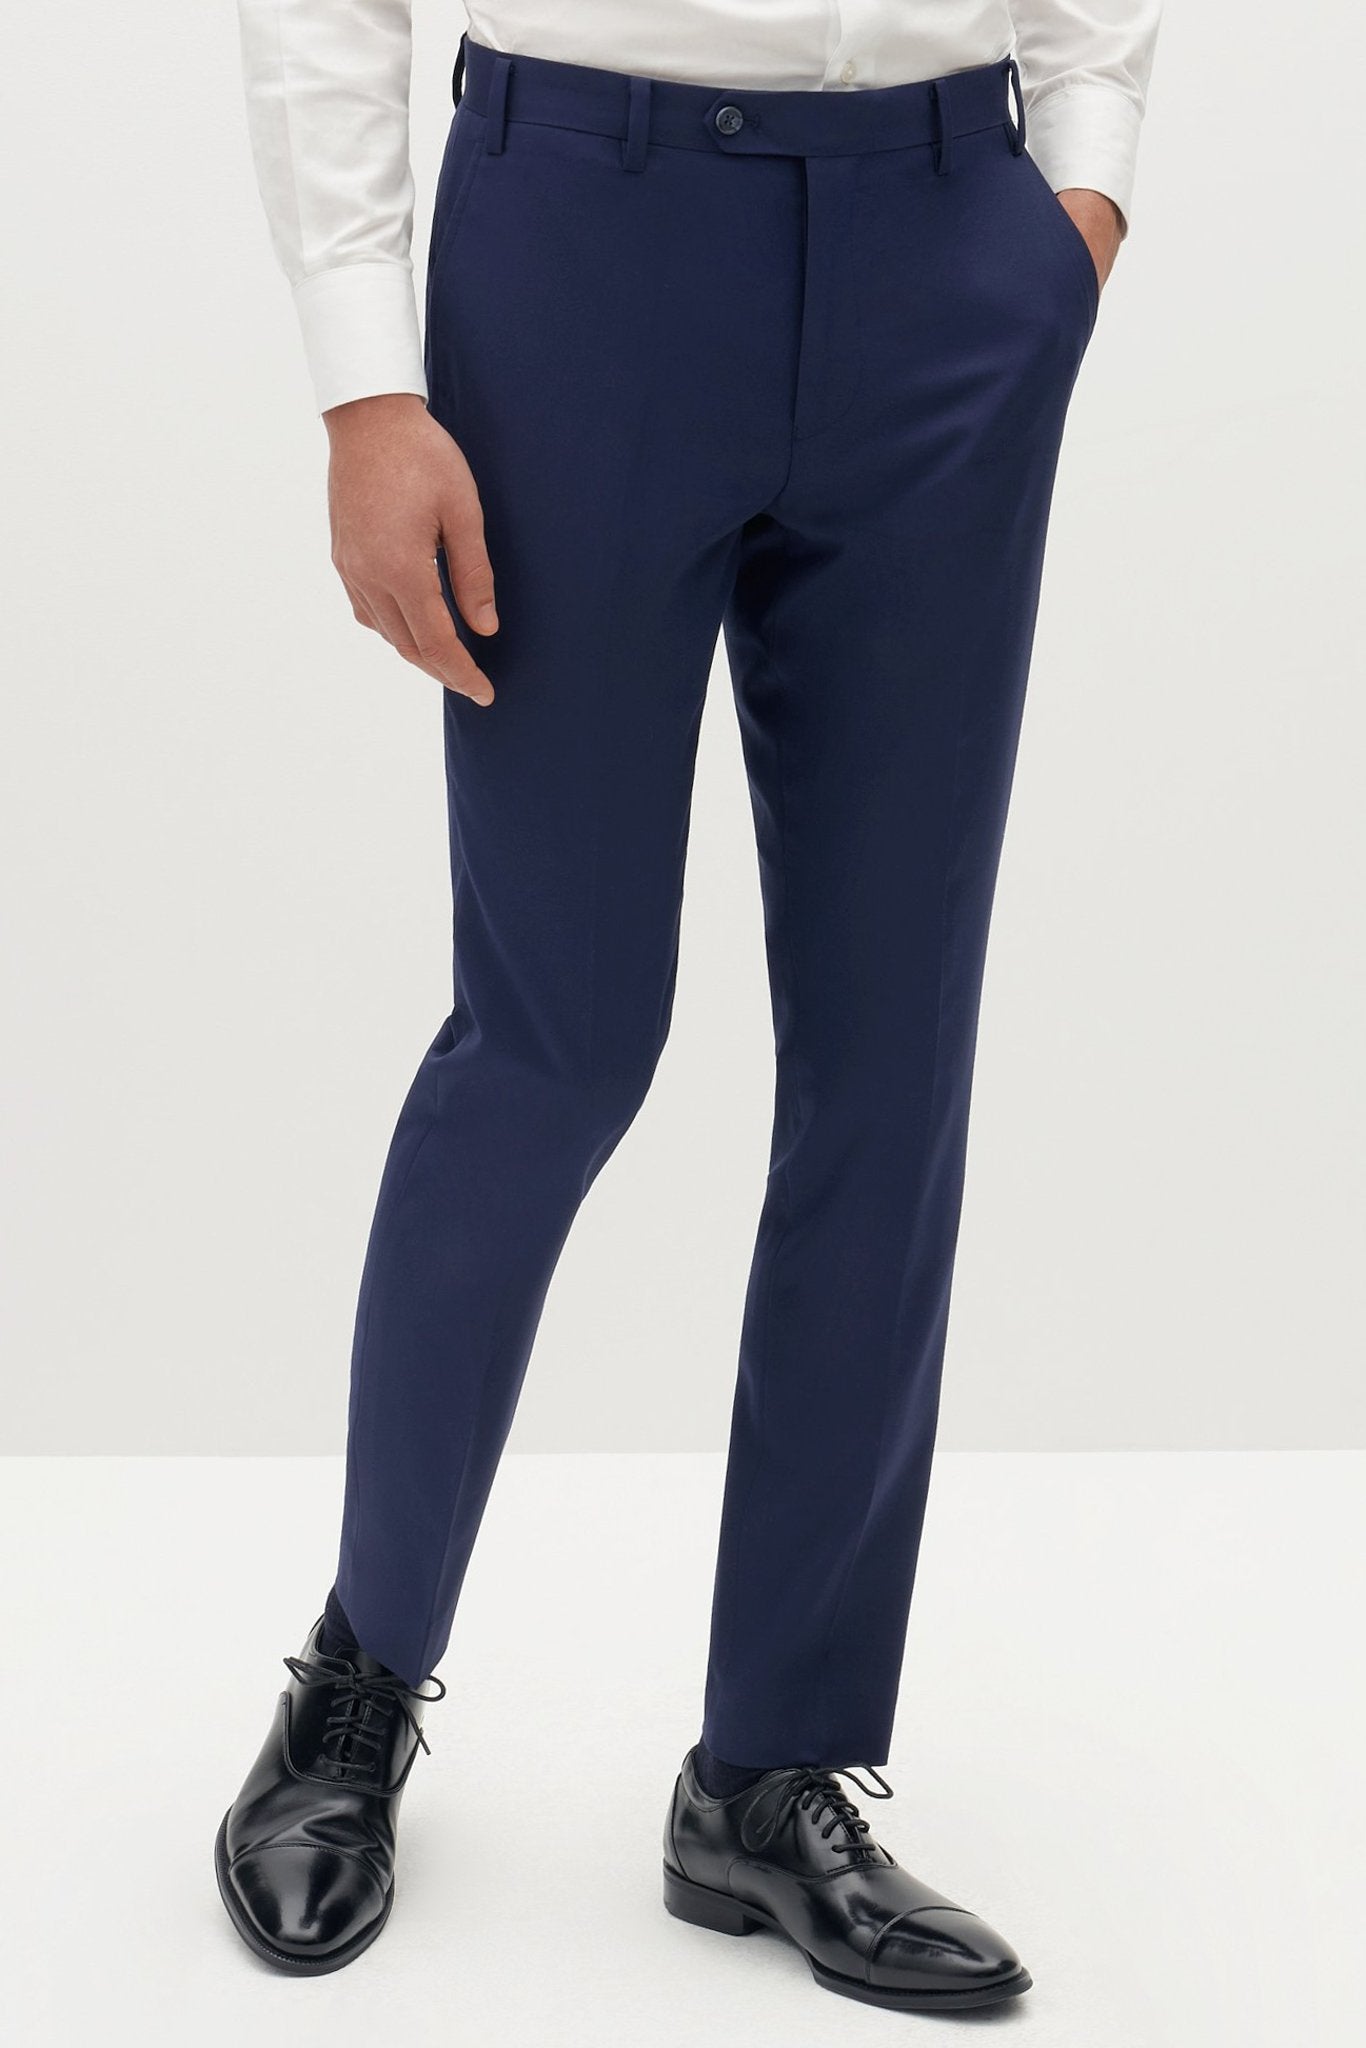 Brilliant Blue Groomsmen Suit Pants by SuitShop, front view